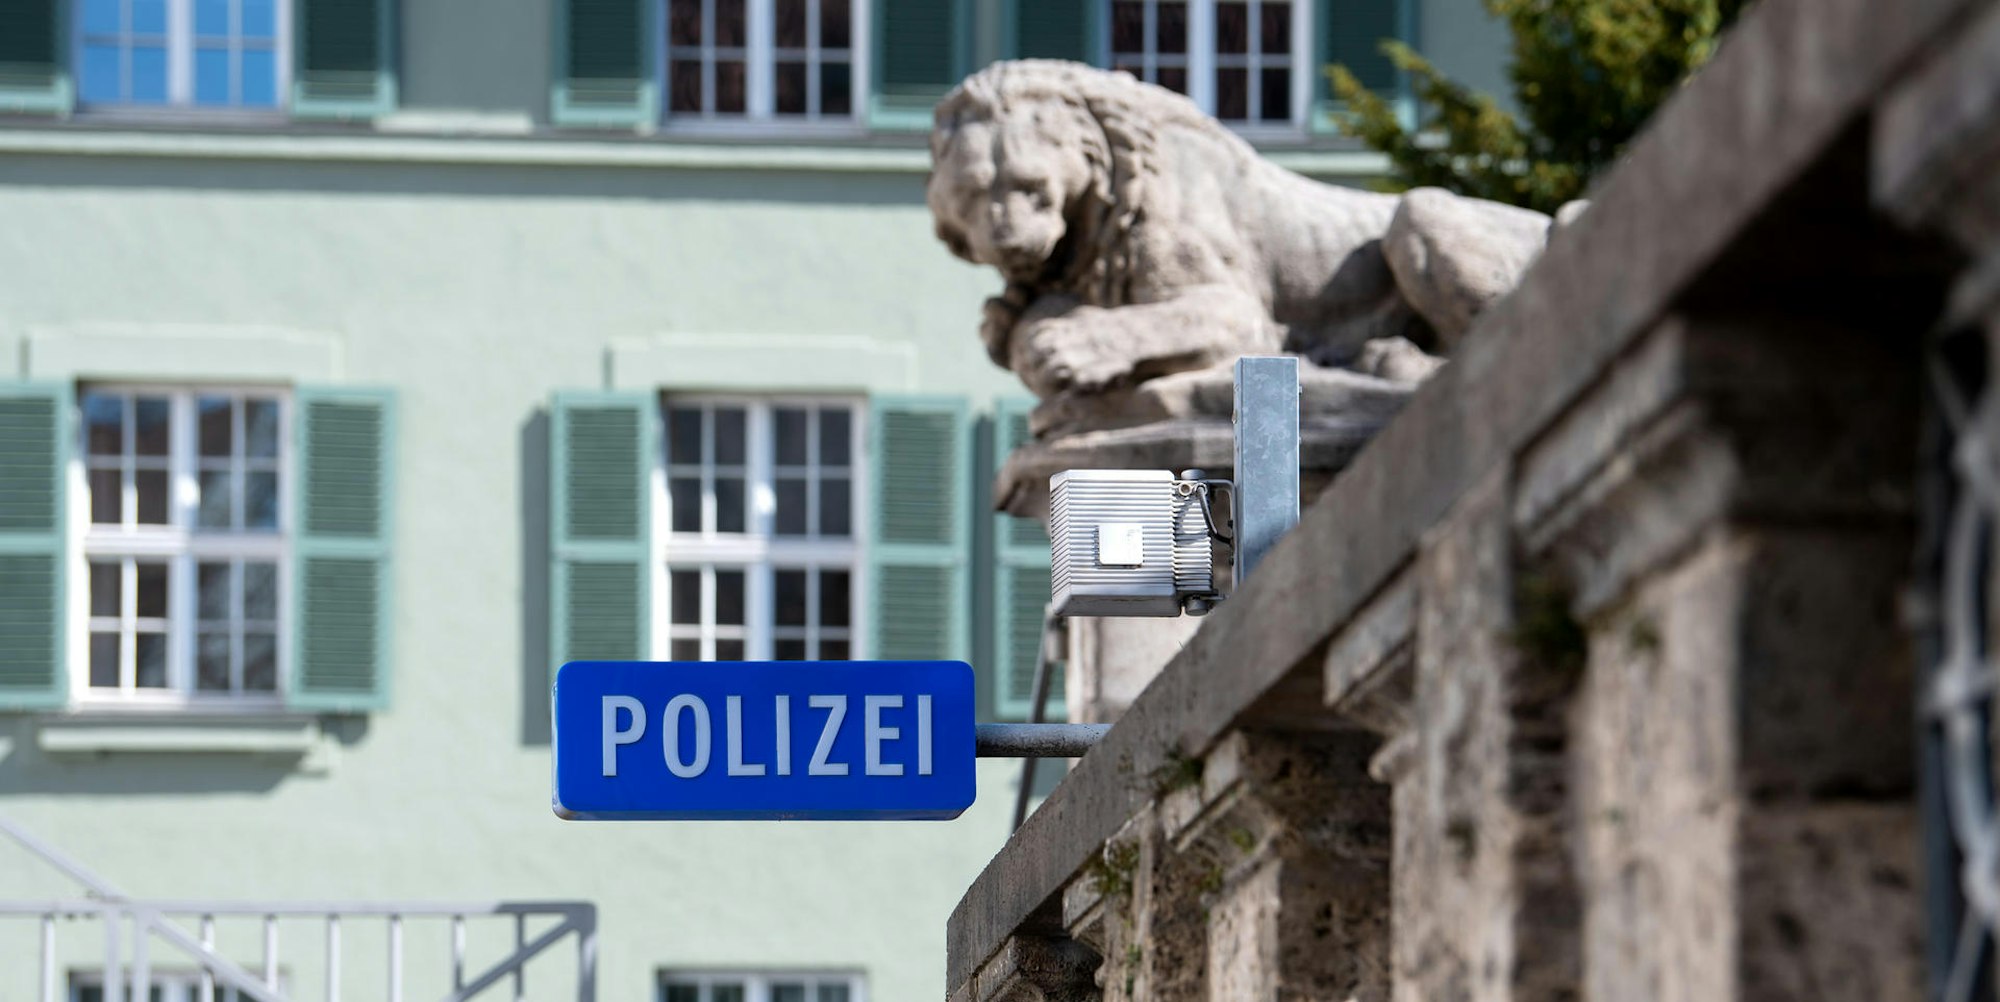 Polizei München DPA 180722